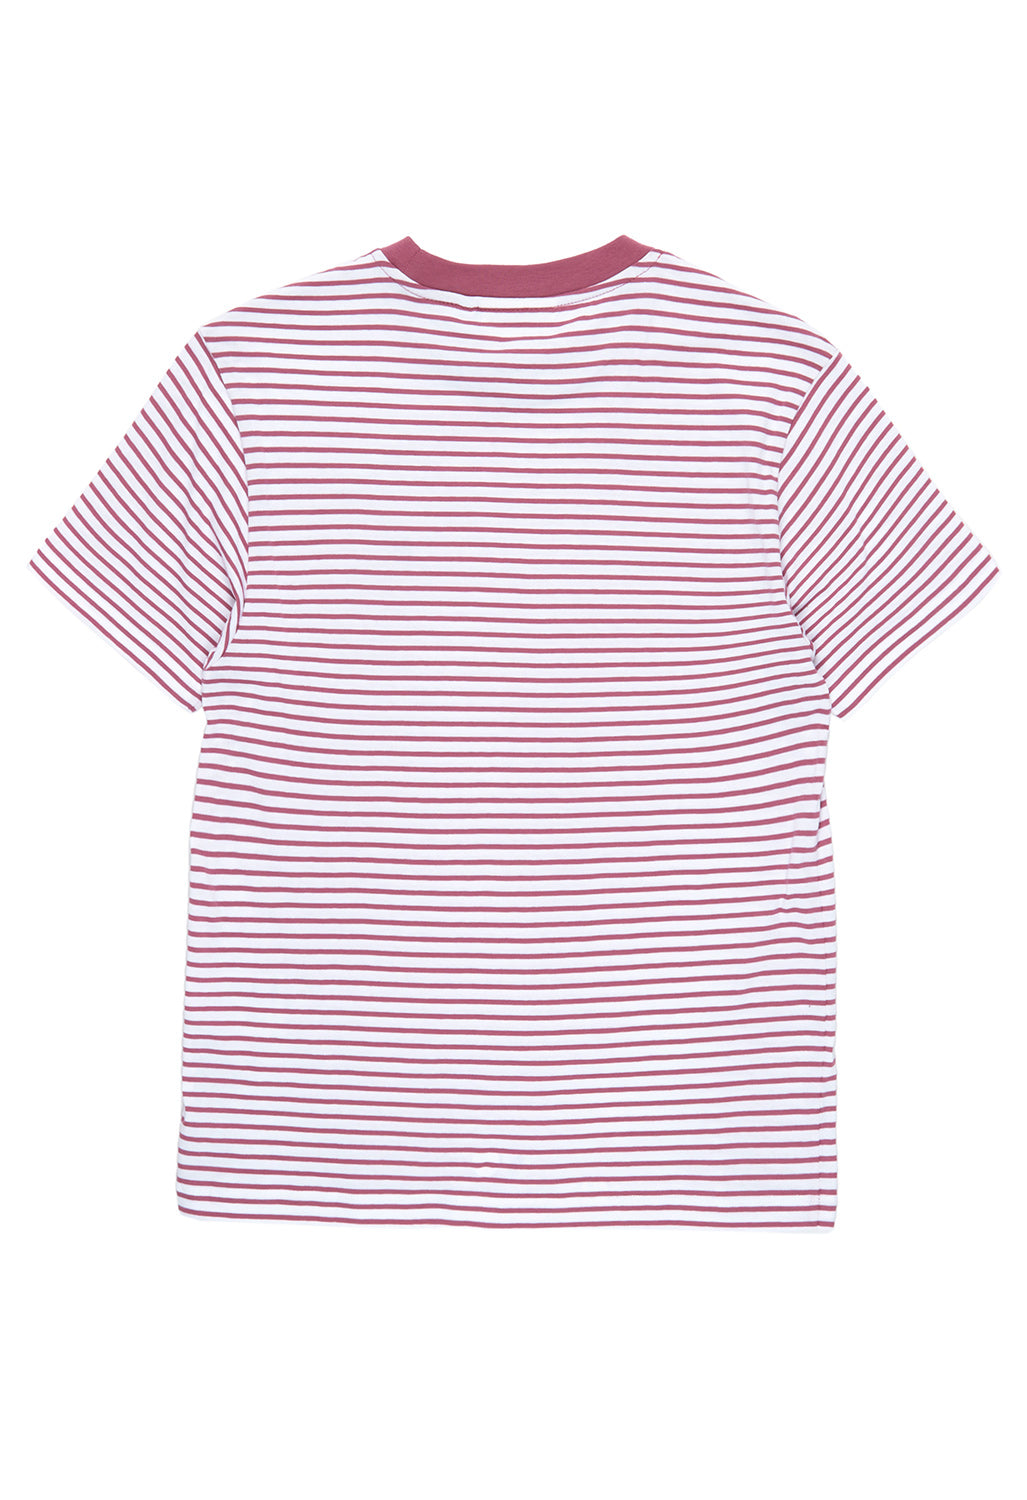 Carhartt WIP Women's Coleen T-Shirt - Coleen Stripe, White / Magenta